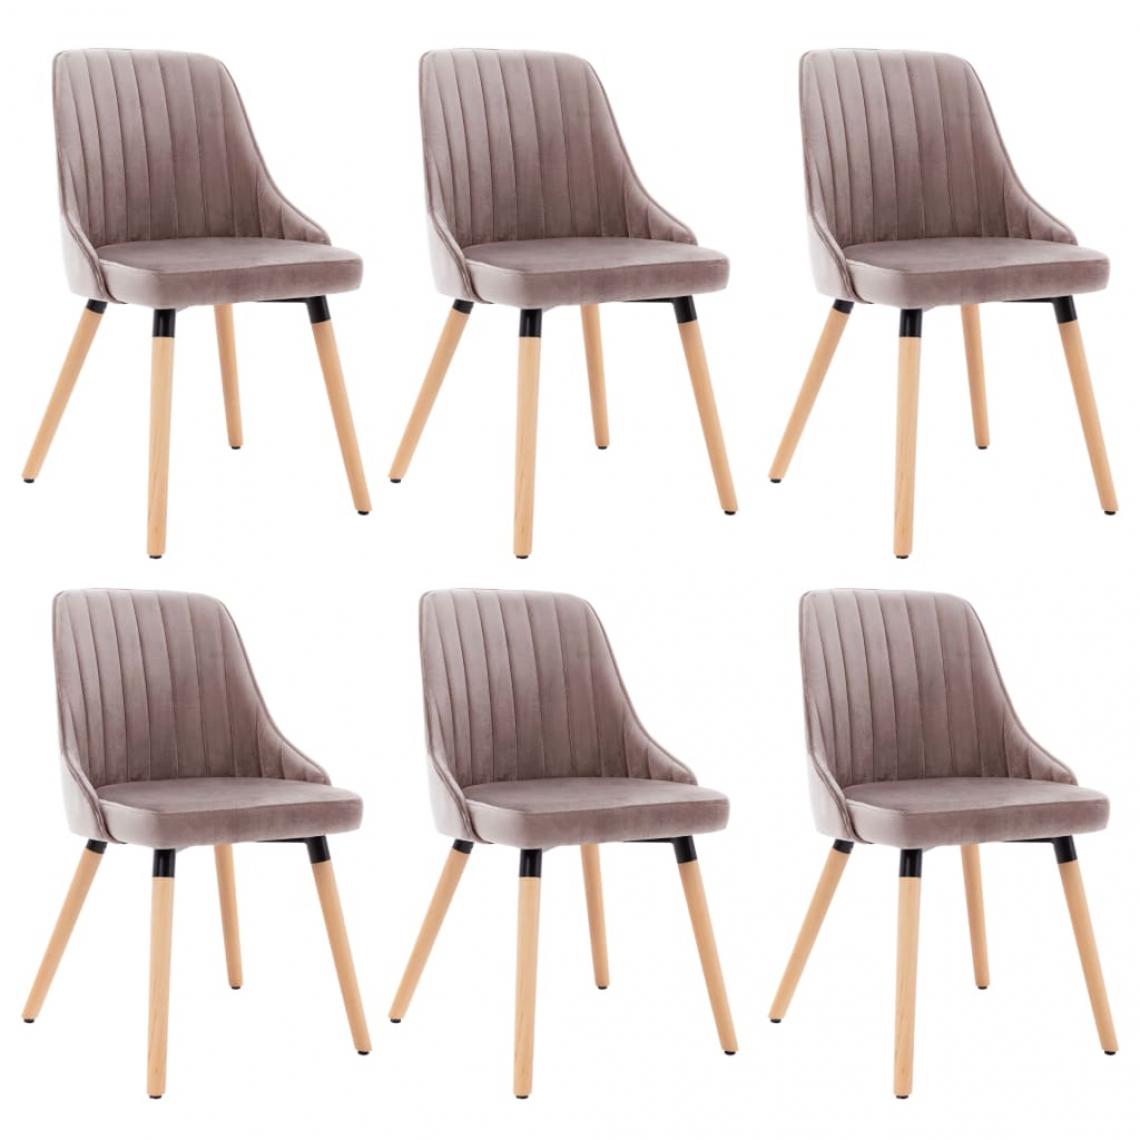 Decoshop26 - Lot de 6 chaises de salle à manger cuisine design moderne velours rose CDS022791 - Chaises